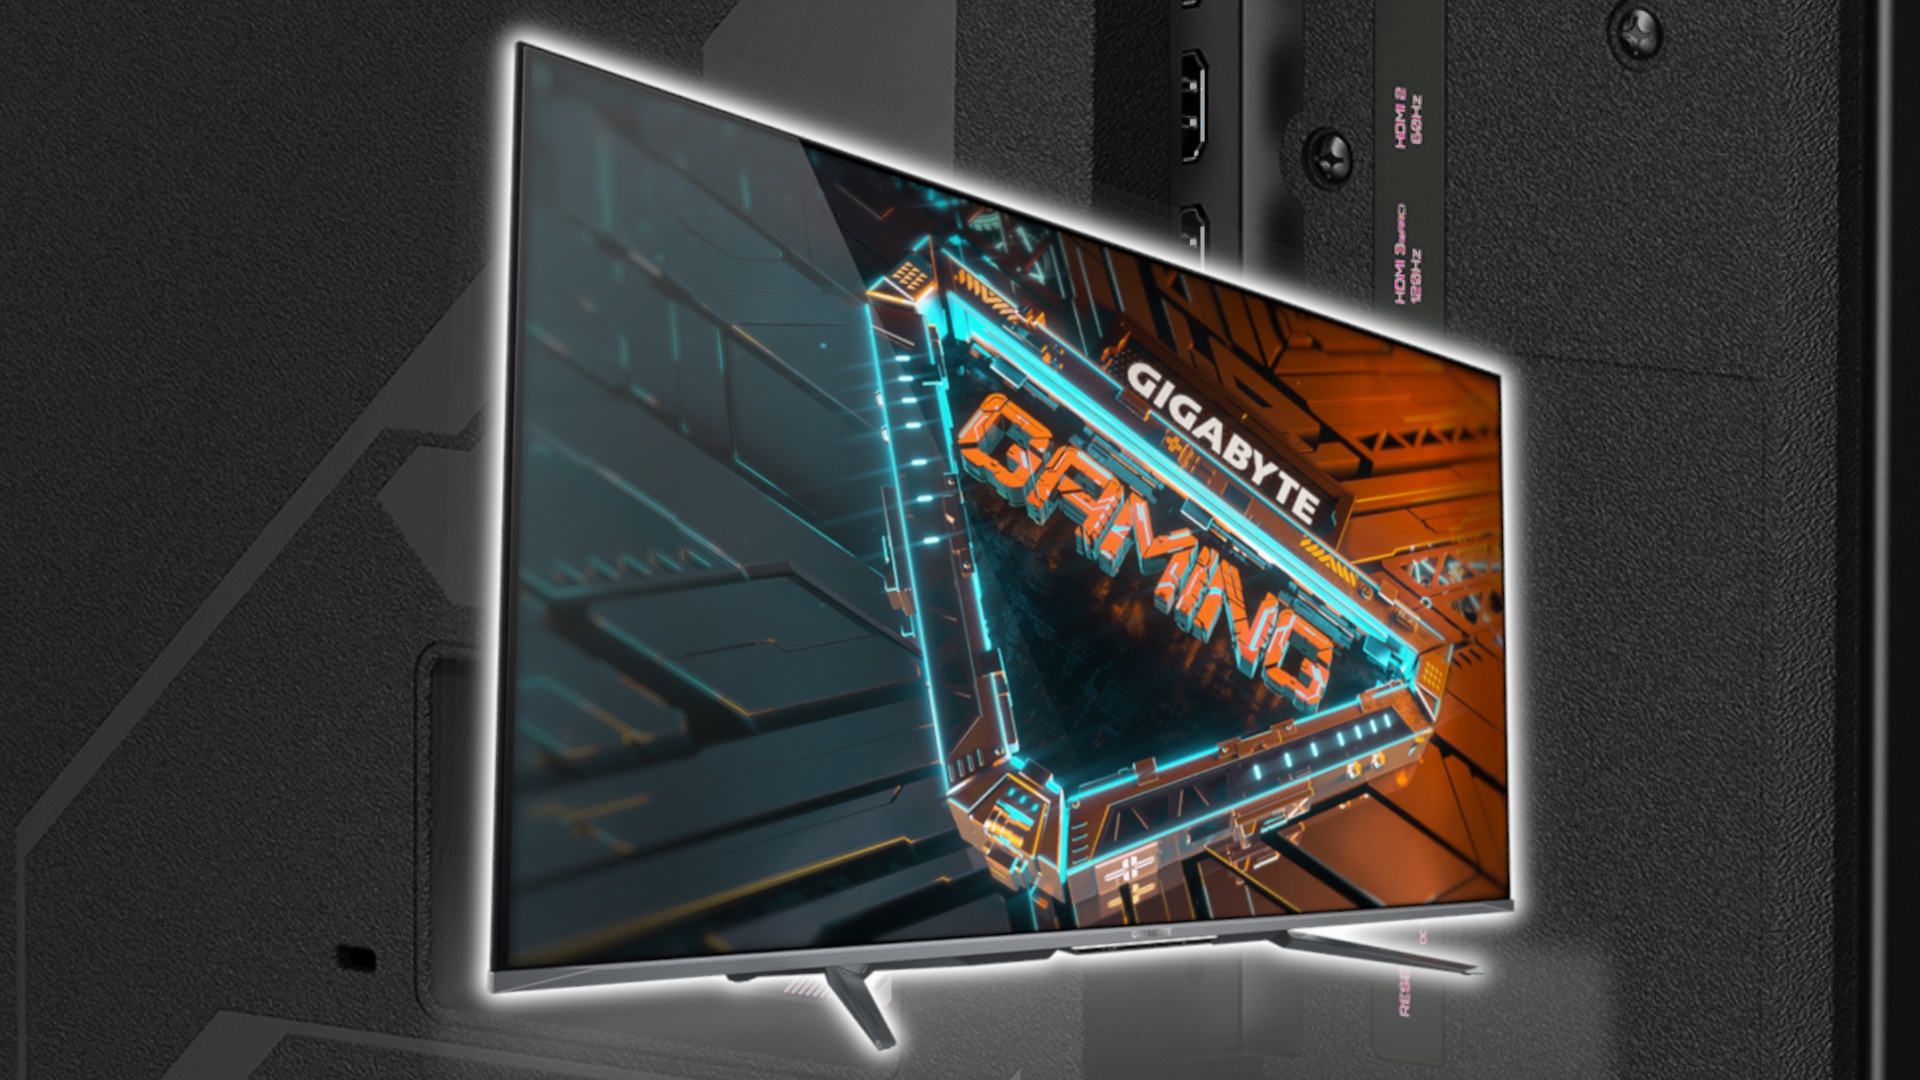 #Riesiger Allround-Monitor – Gigabyte enthüllt Gaming-LCD und Fernseher in einem